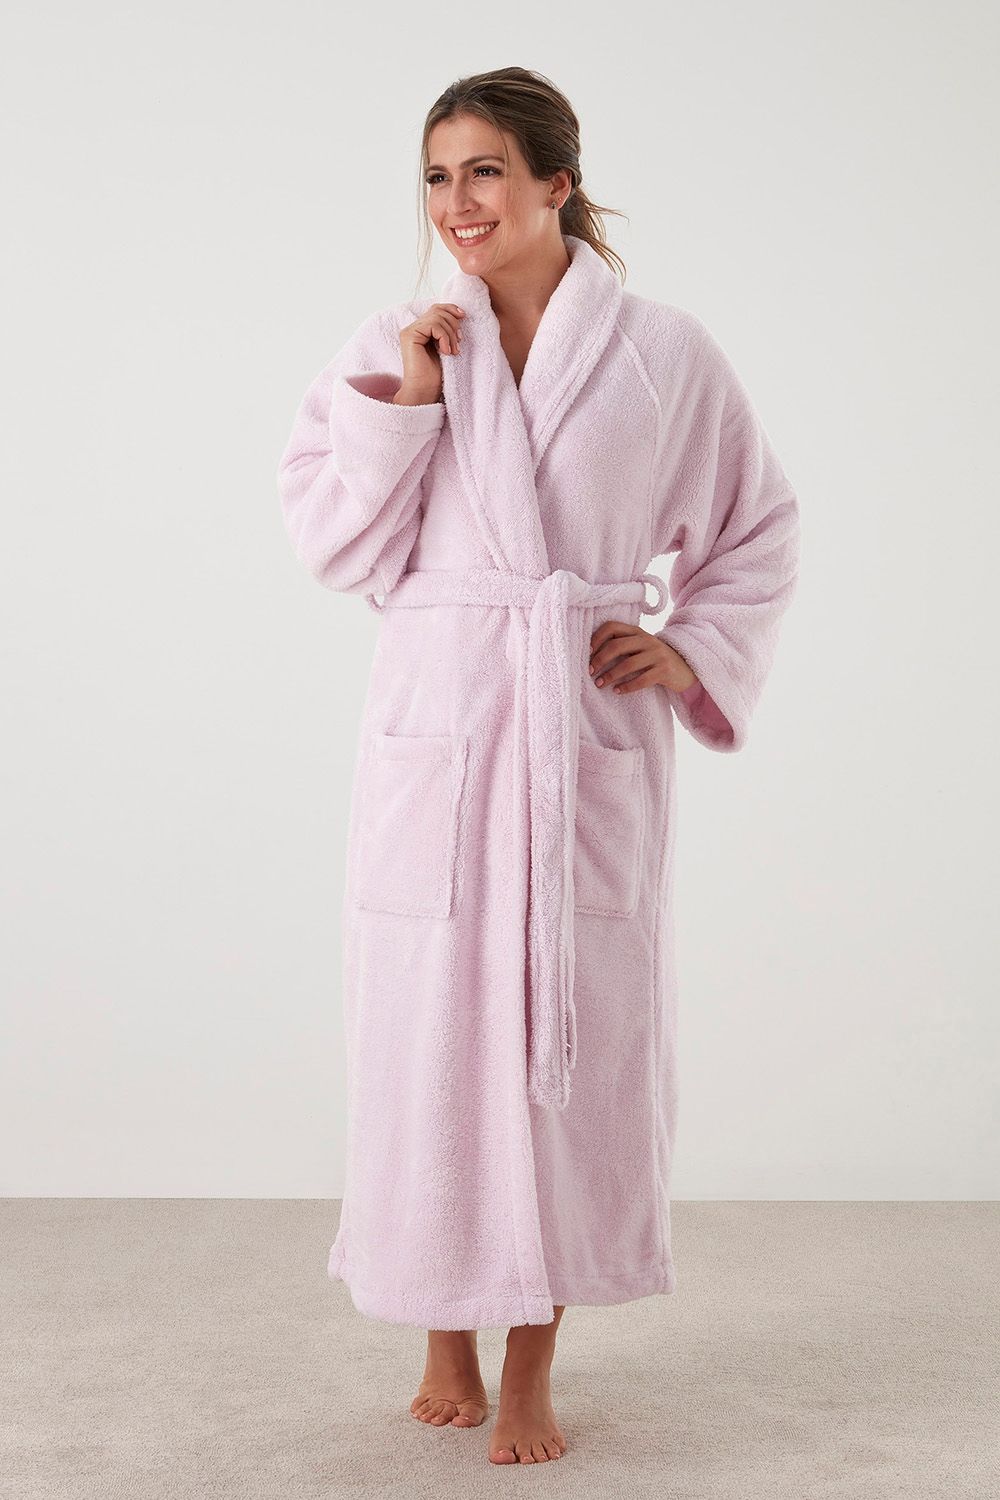 Ladies Plus Size Fleece Dressing Gown Full Length Fluffy Bathrobe Housecoat  Robe | eBay